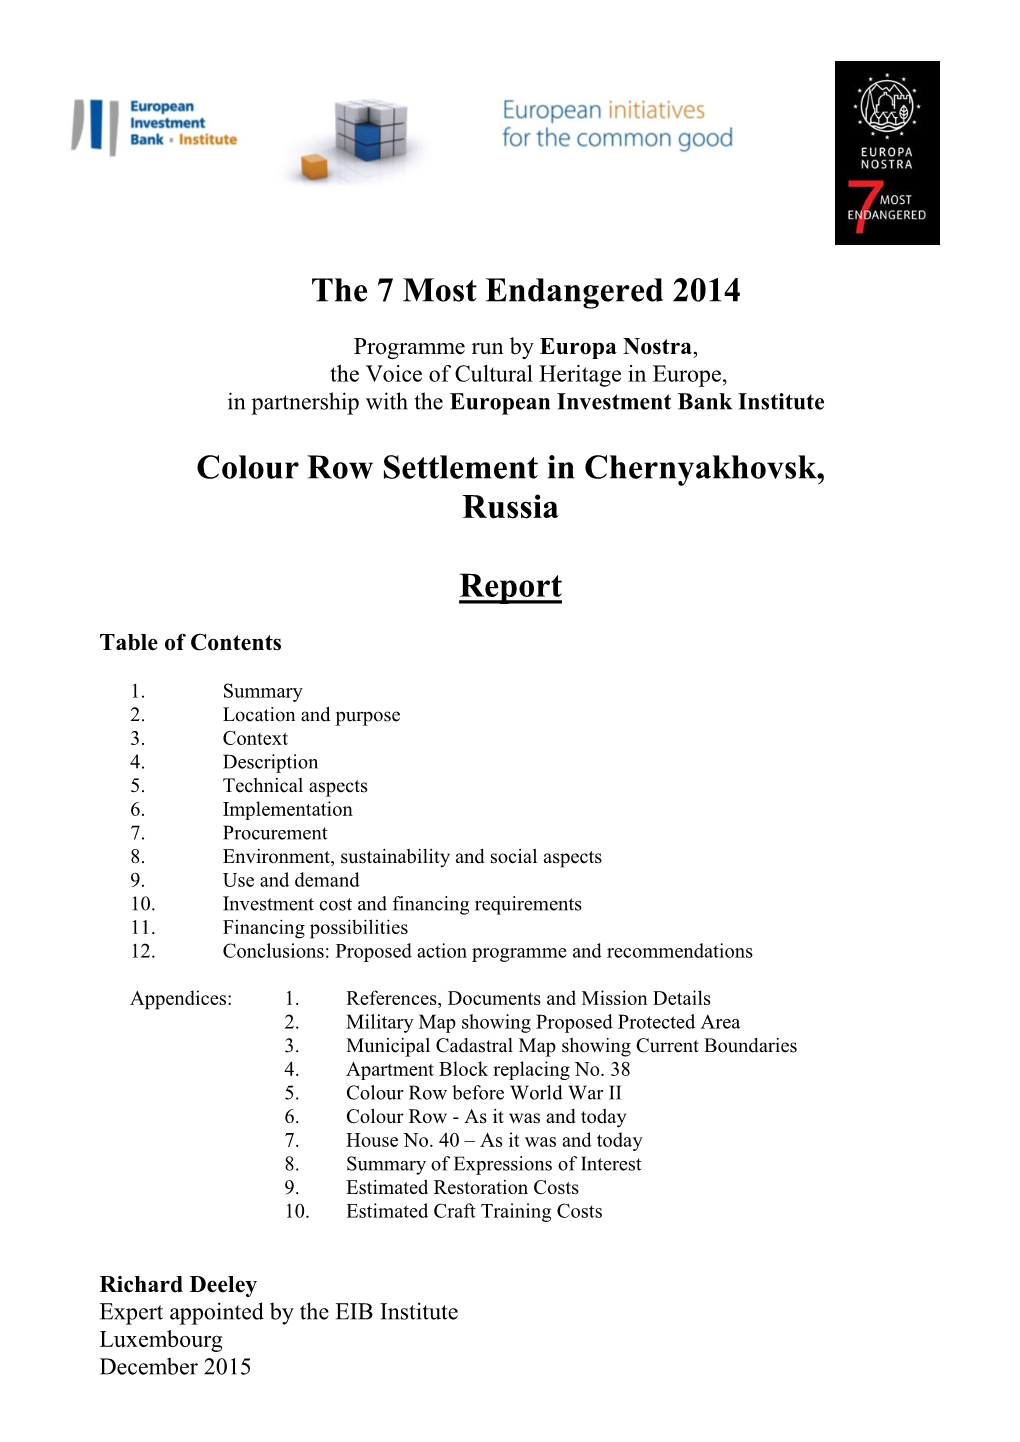 The 7 Most Endangered 2014 Colour Row Settlement in Chernyakhovsk